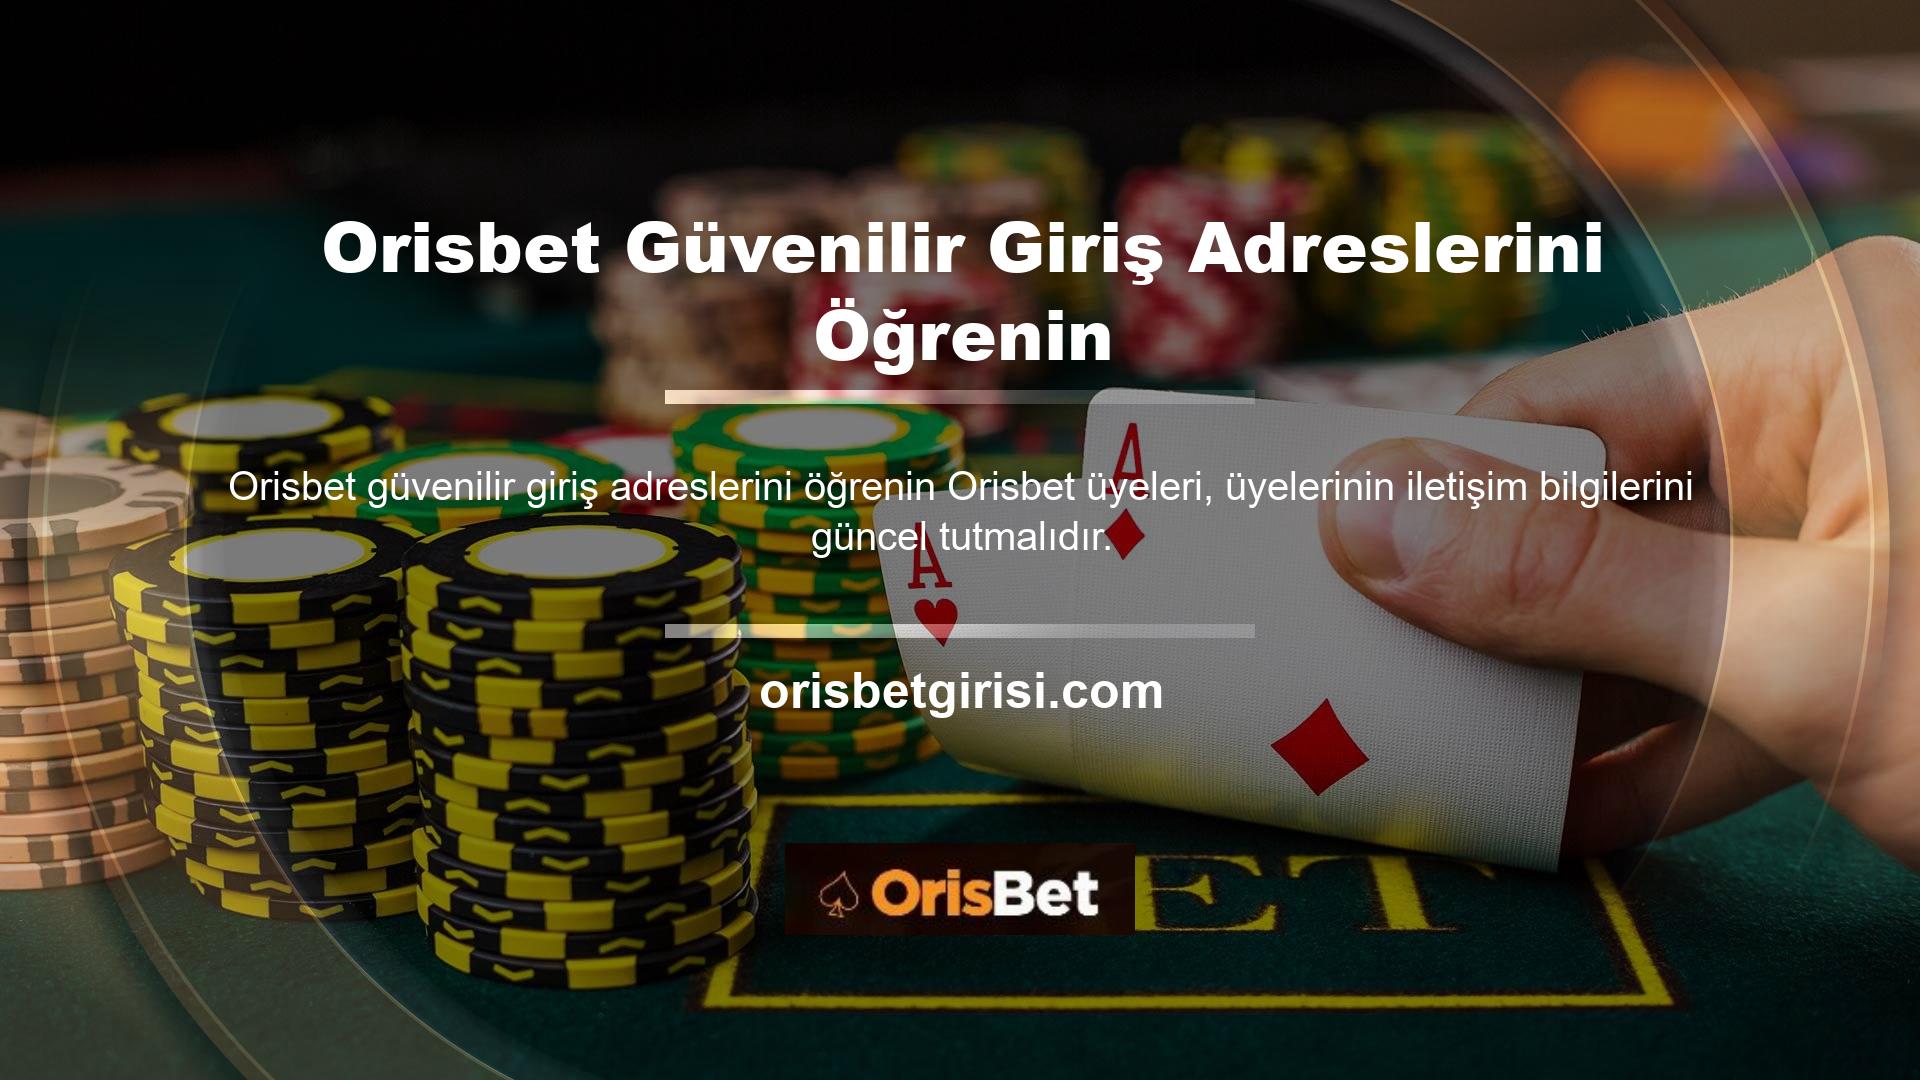 En güvenilir casino sitelerinden biri olan casino sitesi Orisbet, adres değişikliği işlemlerini SMS ve e-posta yoluyla üyelerine bildirmektedir